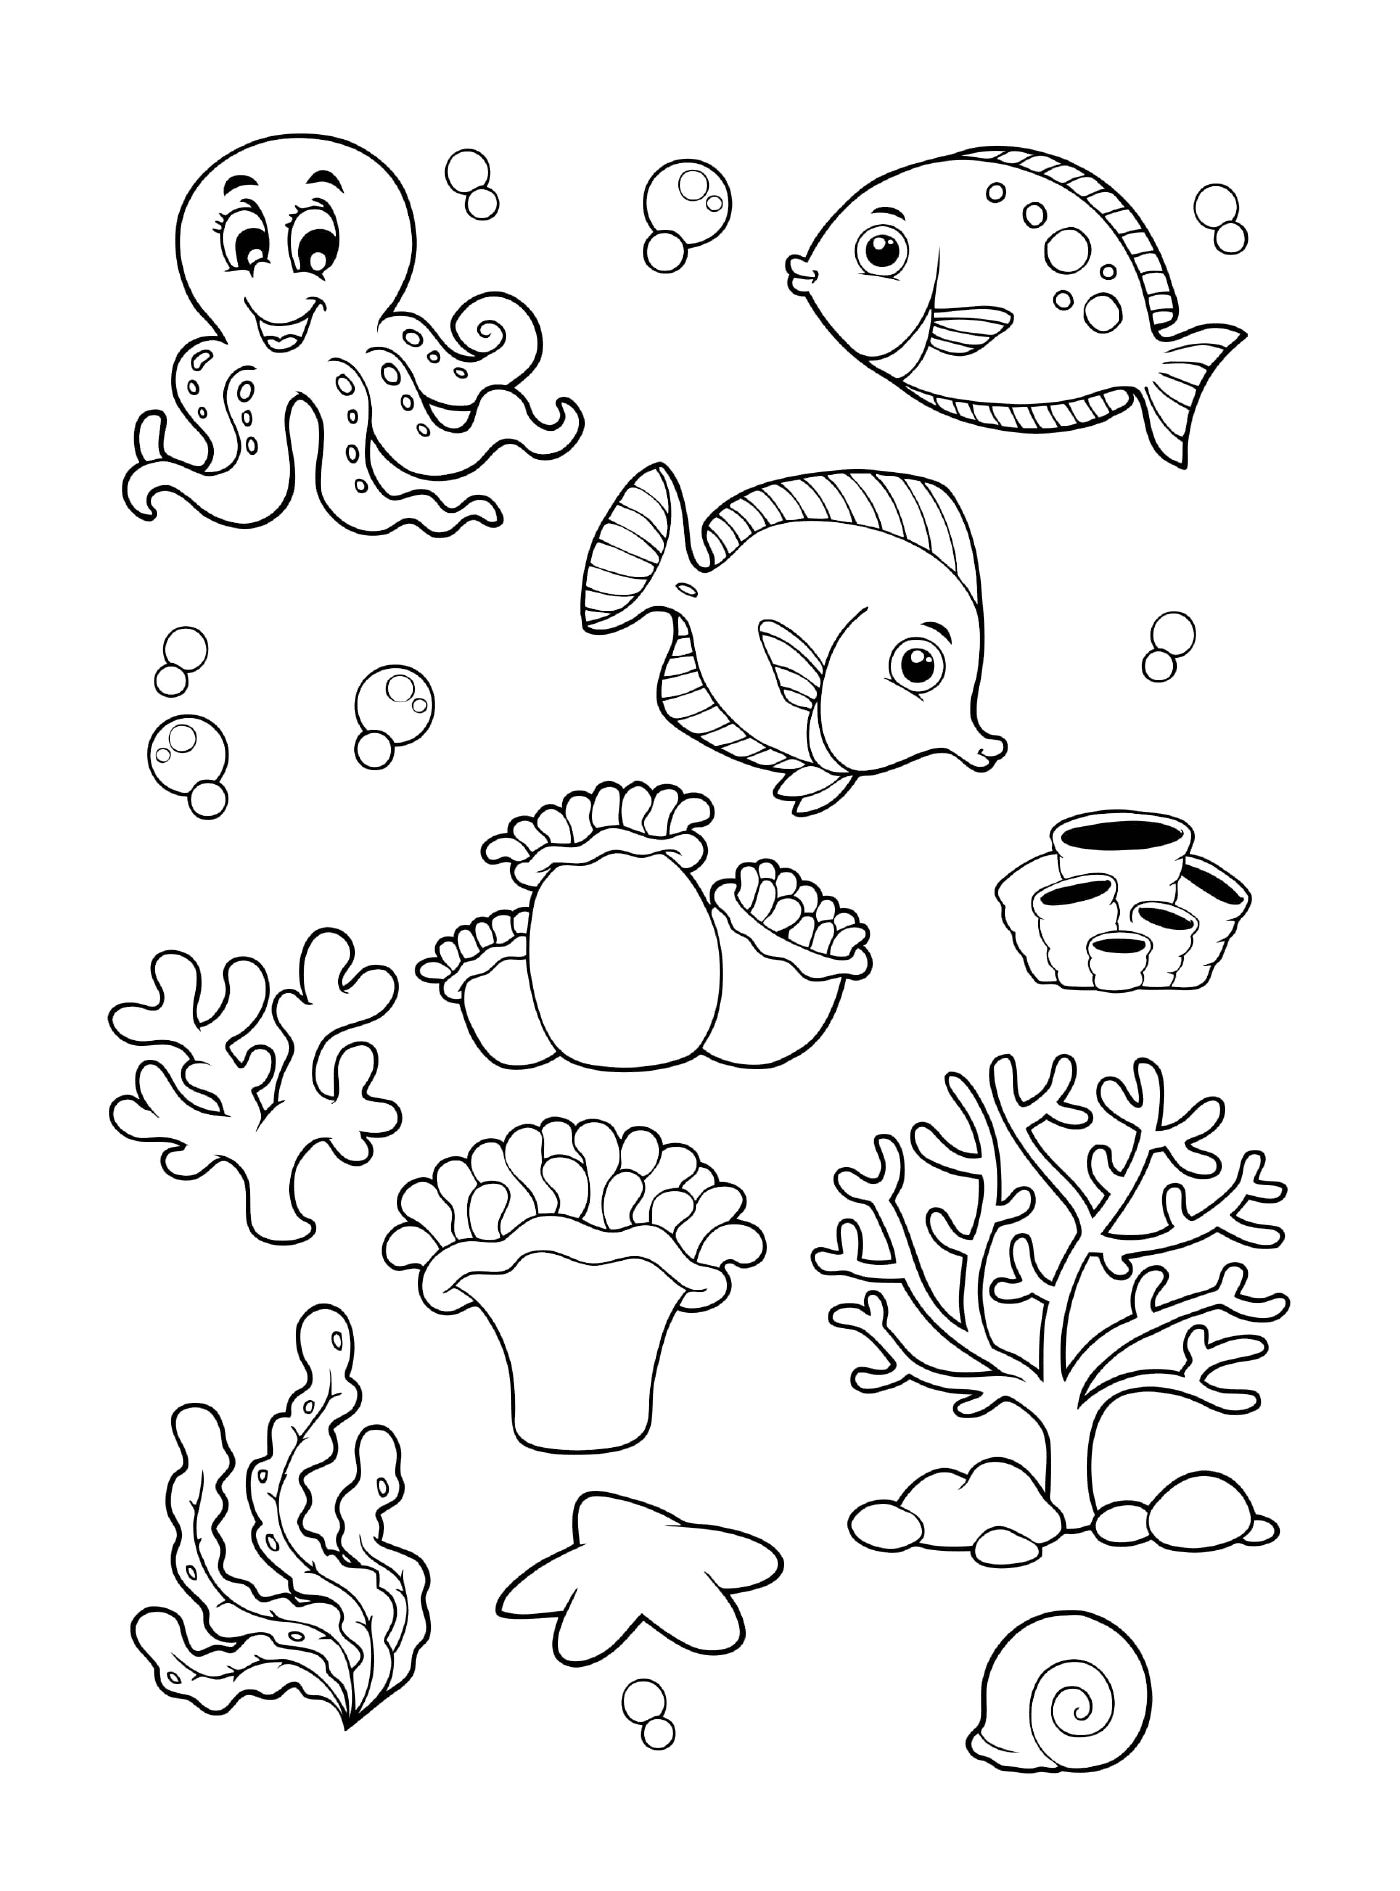  مجموعة من الحيوانات البحرية من أجل الطفل 